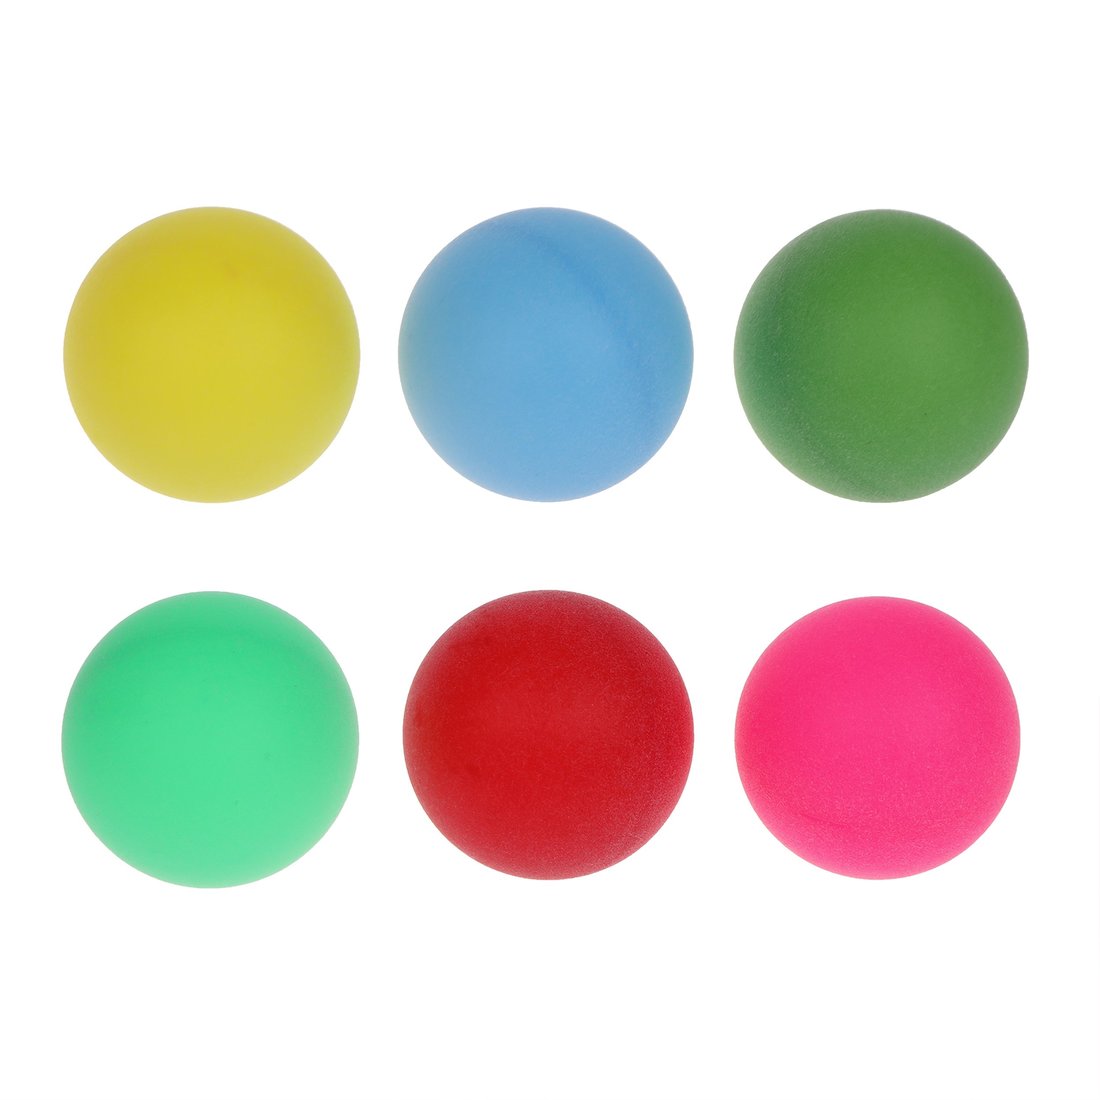 Шарики для настольного тенниса 636179 цветные в наборе 6шт в пакете - Ижевск 